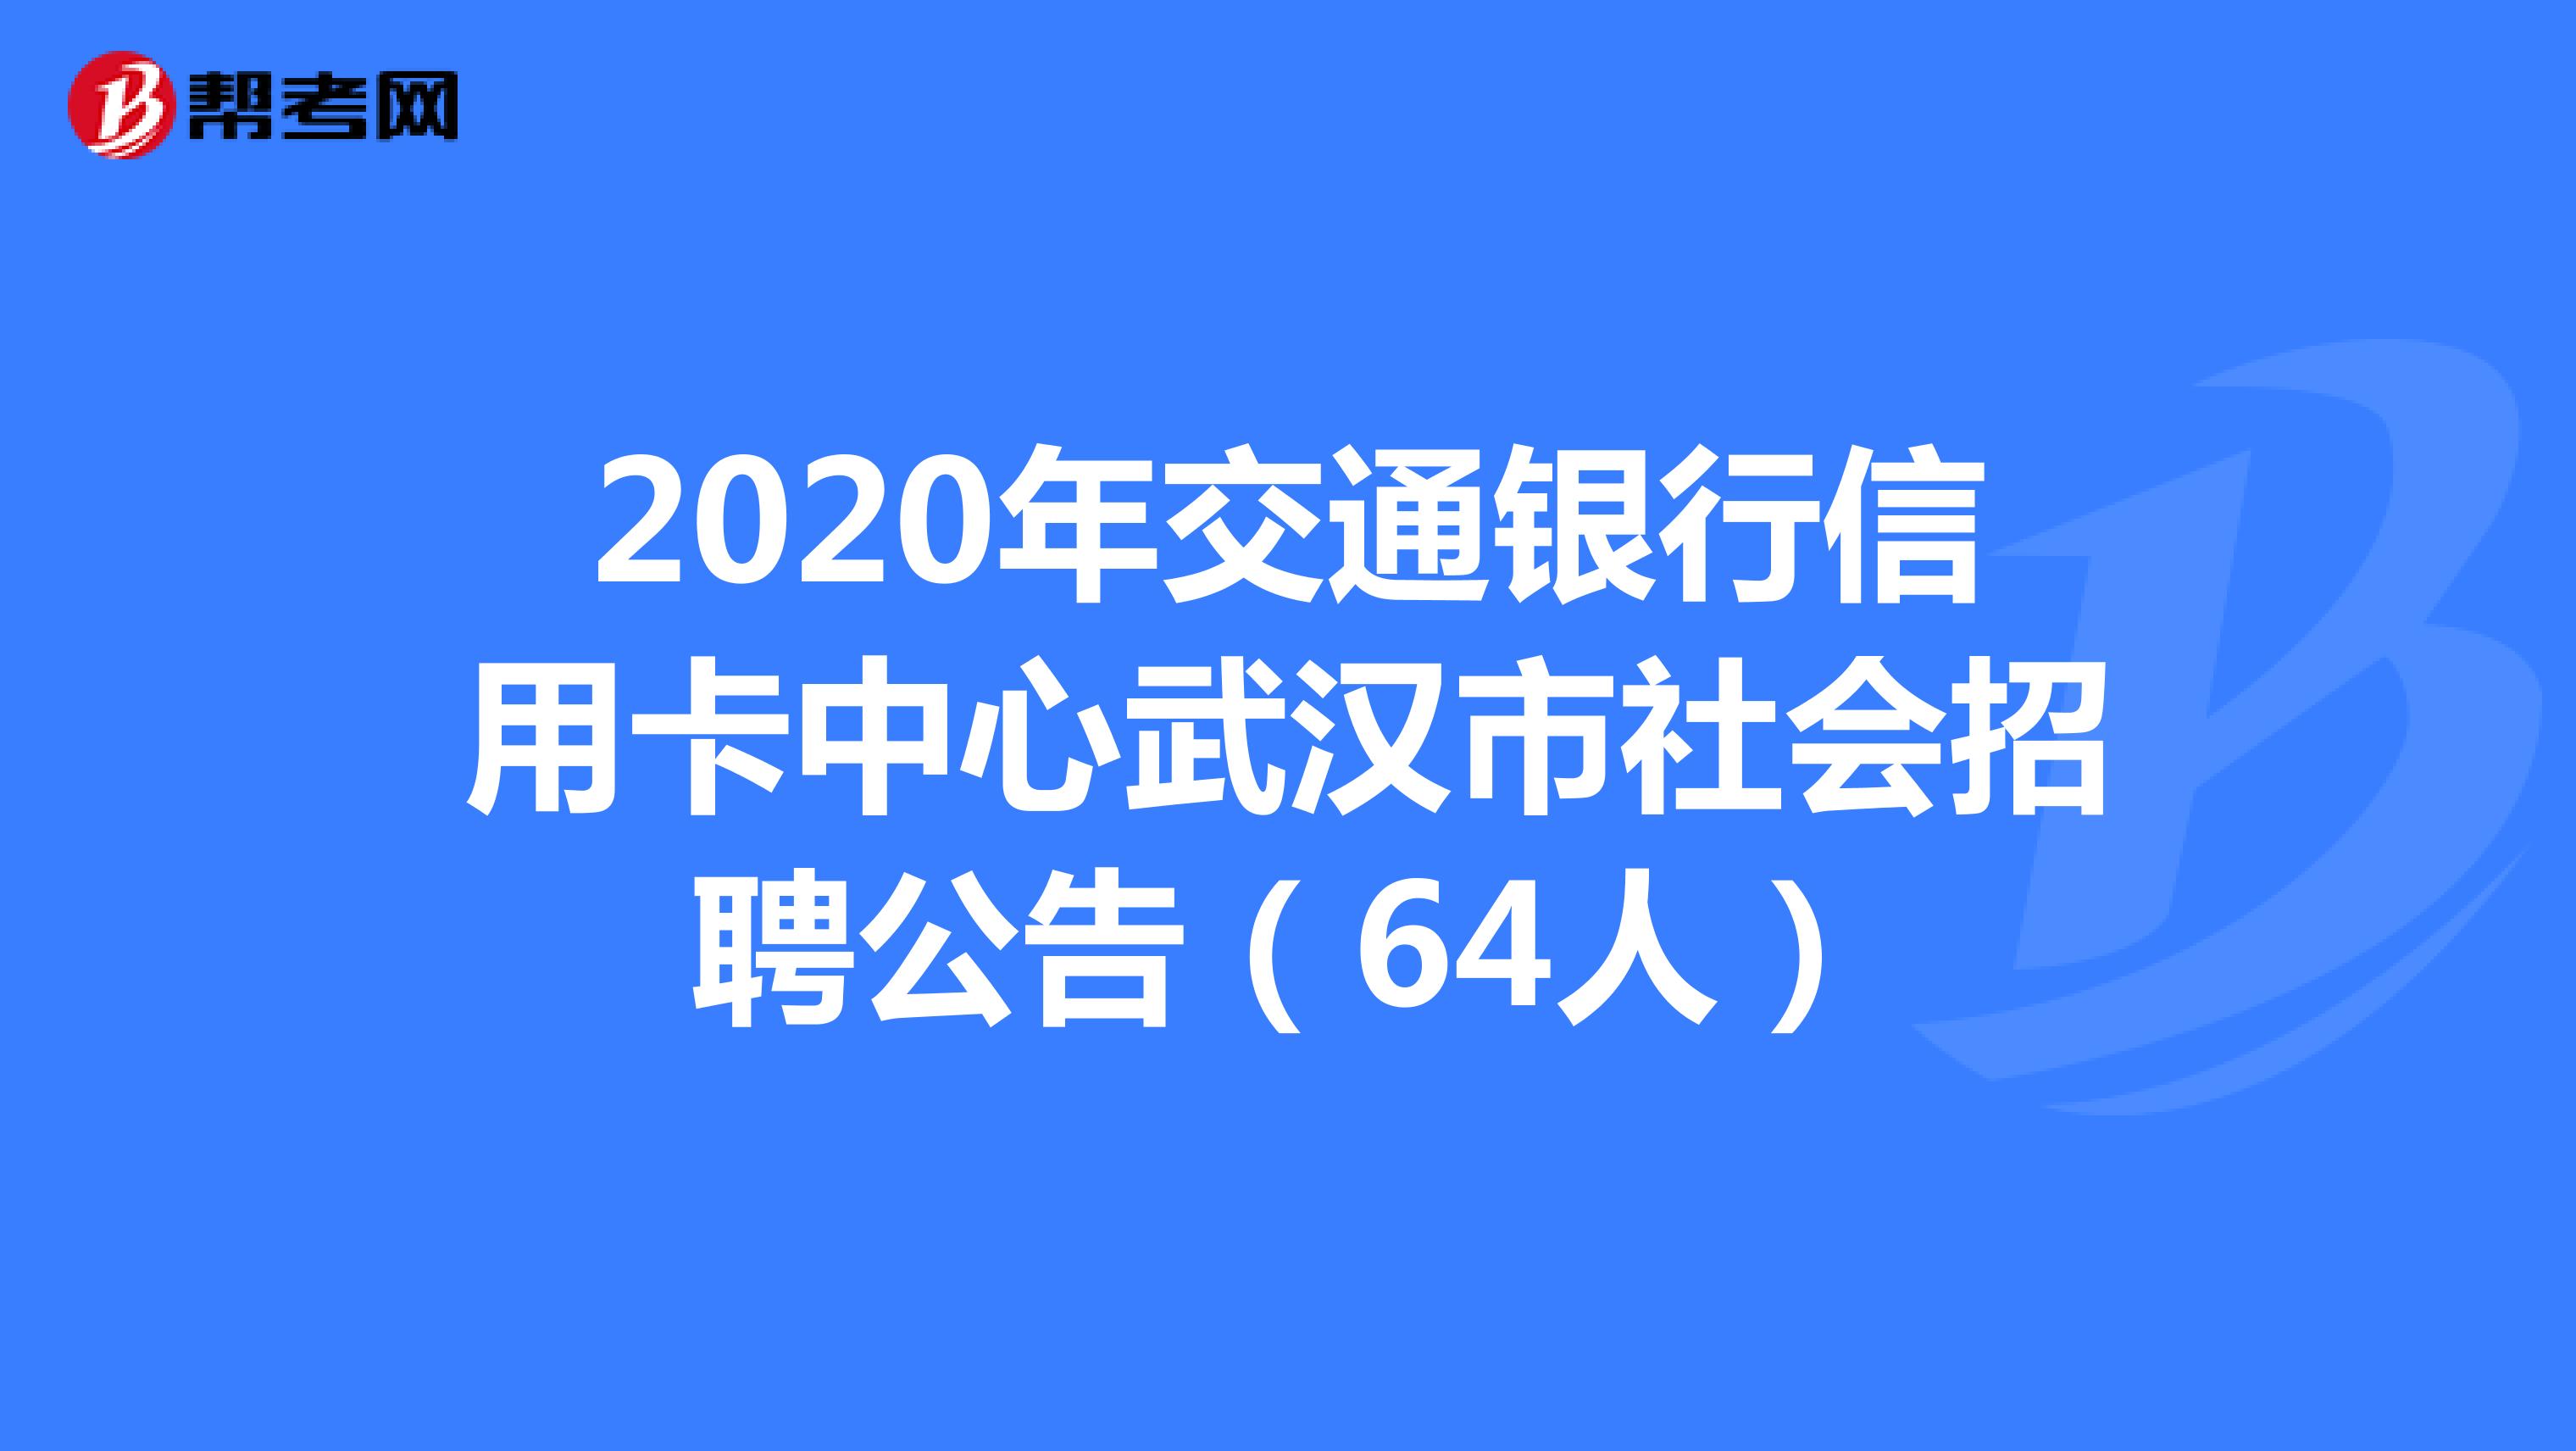 2020年交通银行信用卡中心武汉市社会招聘公告（64人）